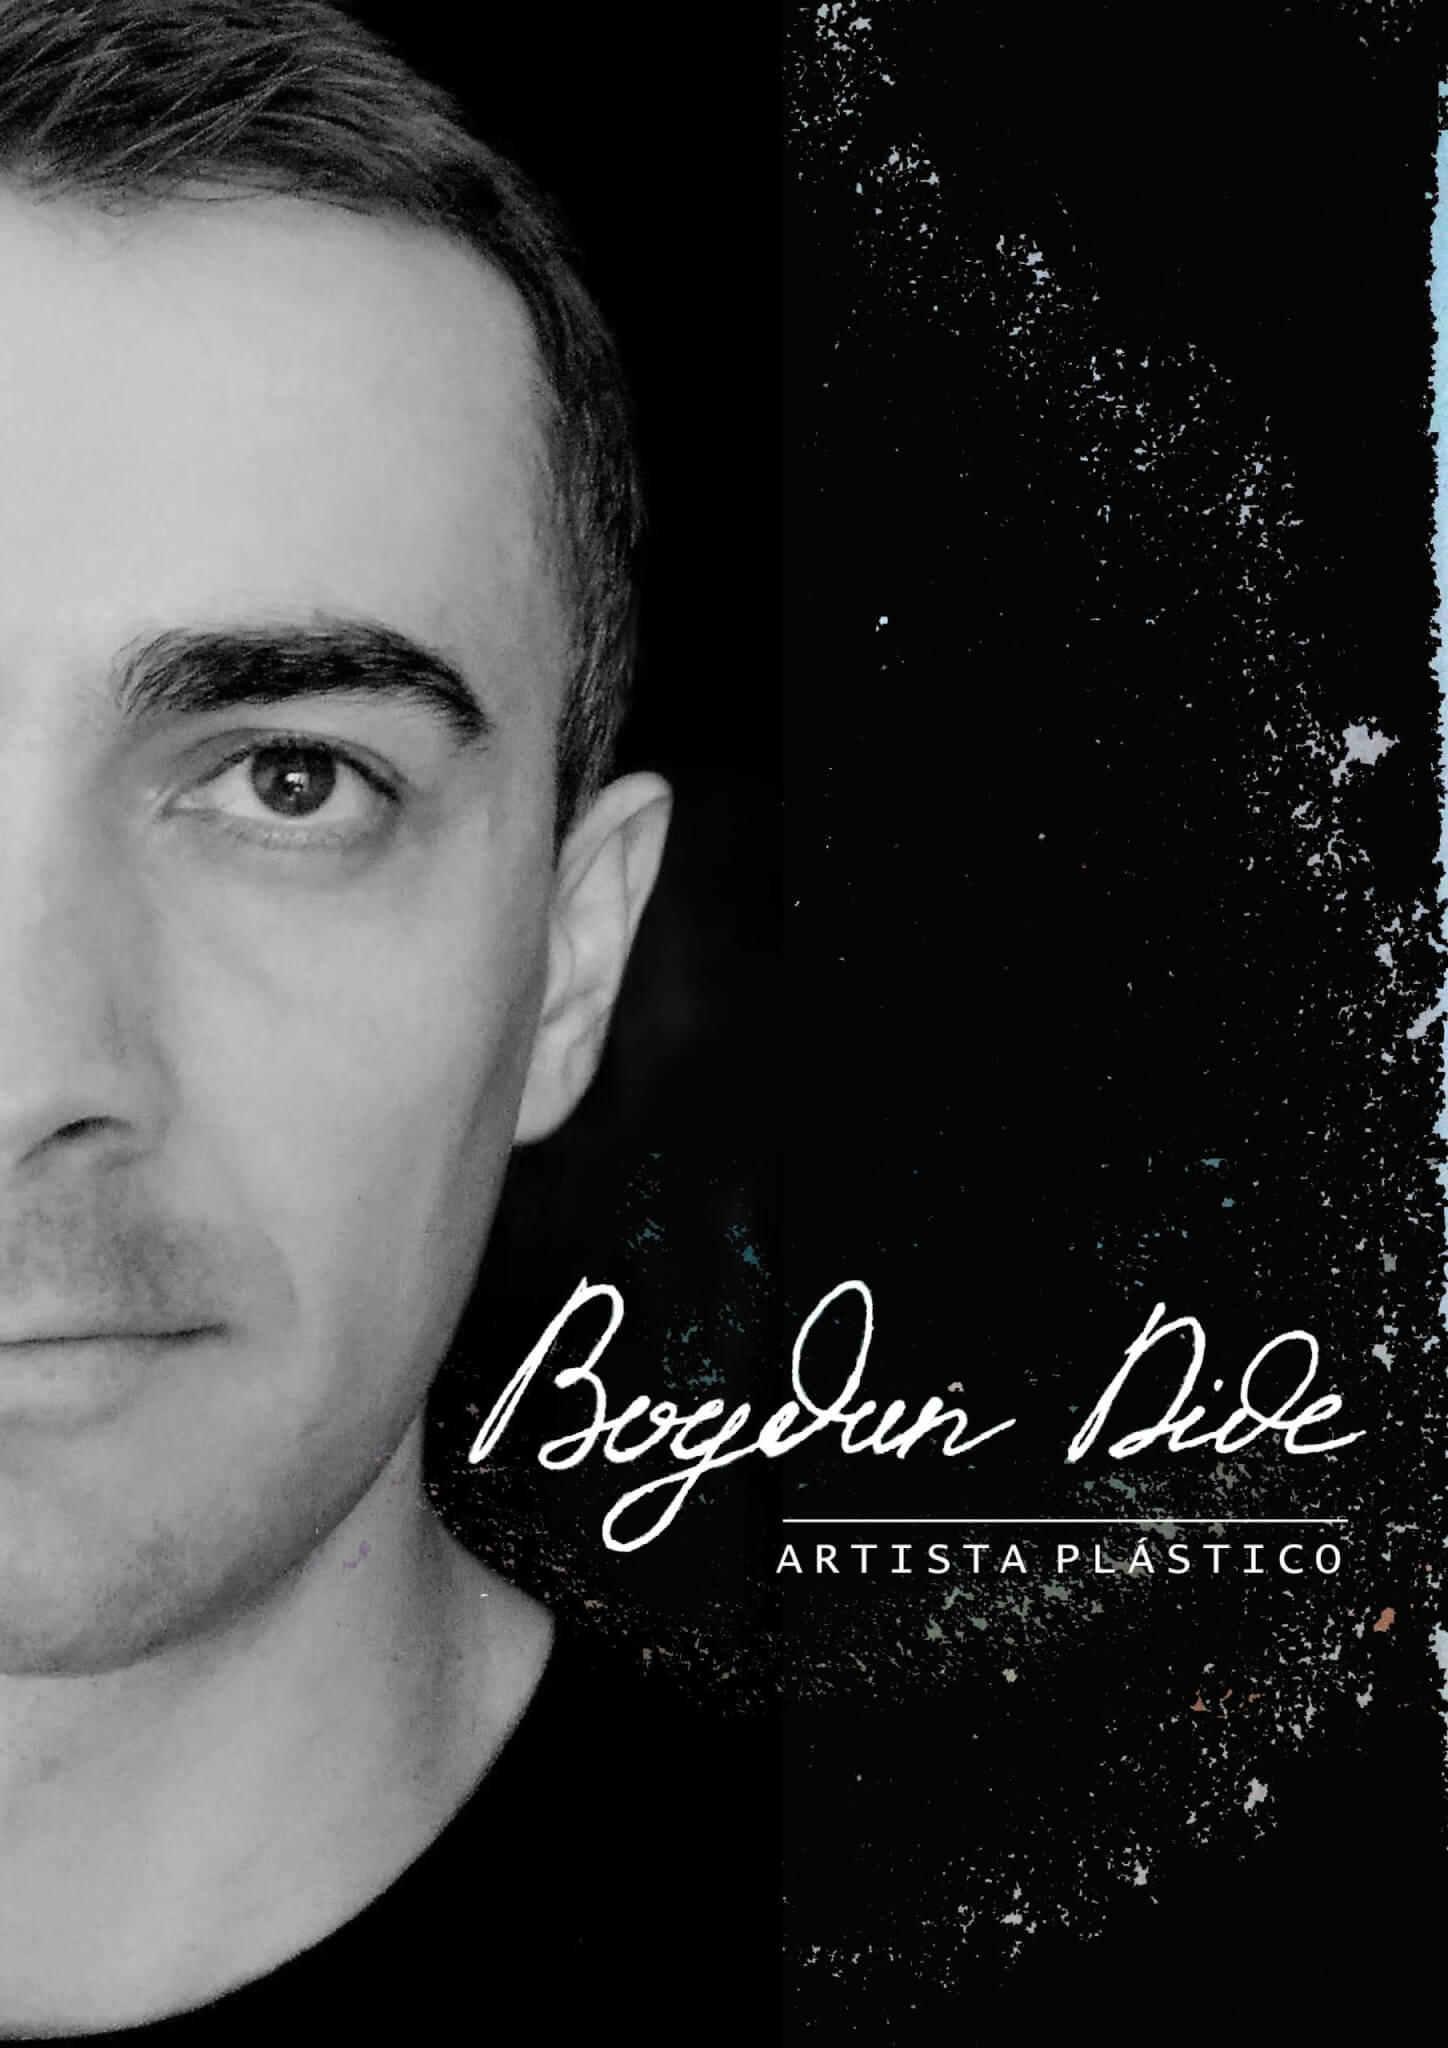 À conversa com Bogdan Dide, artista plástico